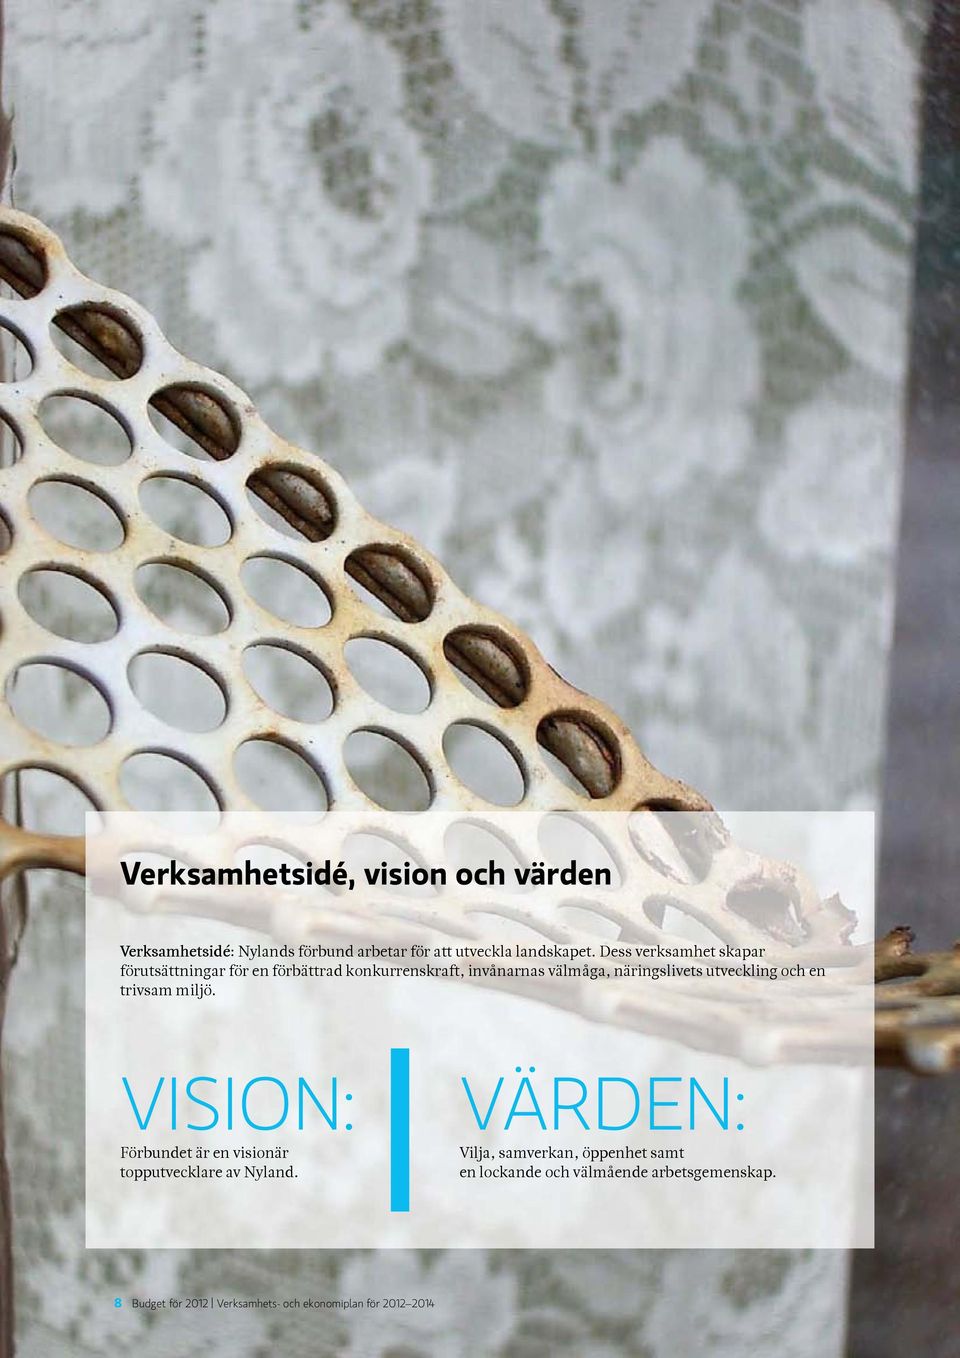 utveckling och en trivsam miljö. VISIoN: Förbundet är en visionär topputvecklare av Nyland.